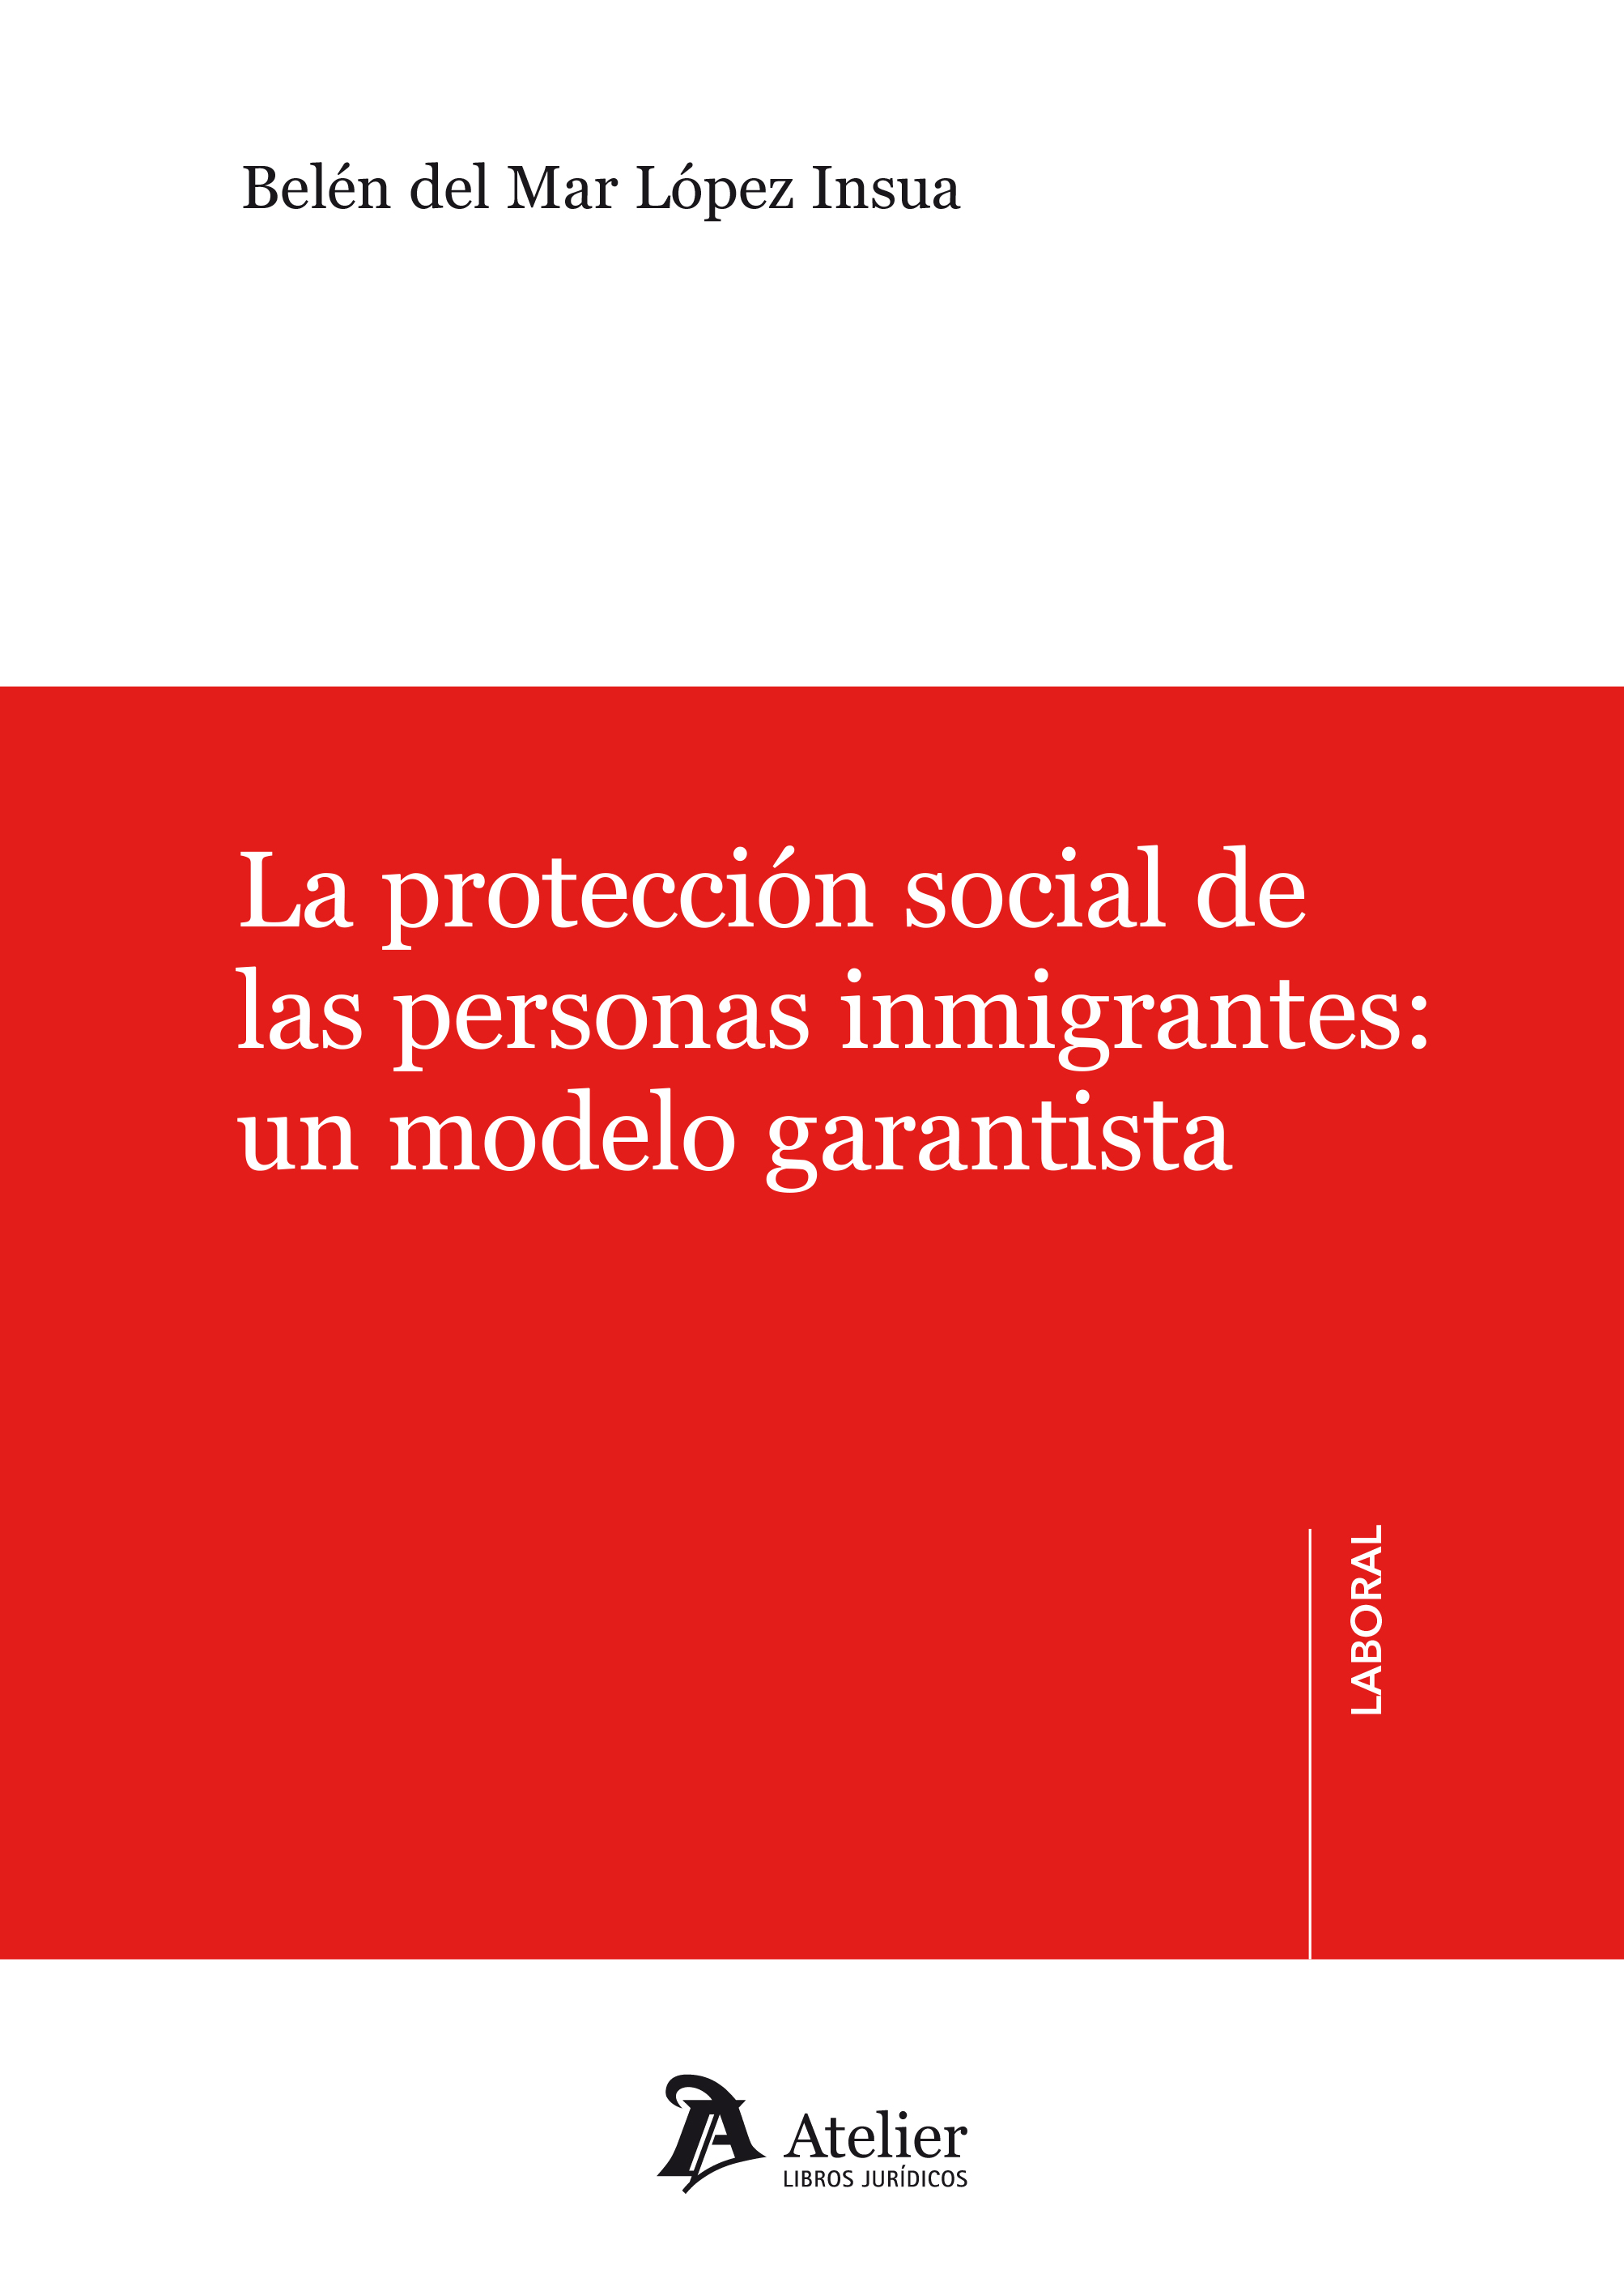 La protección social de las personas inmigrantes: un modelo garantista